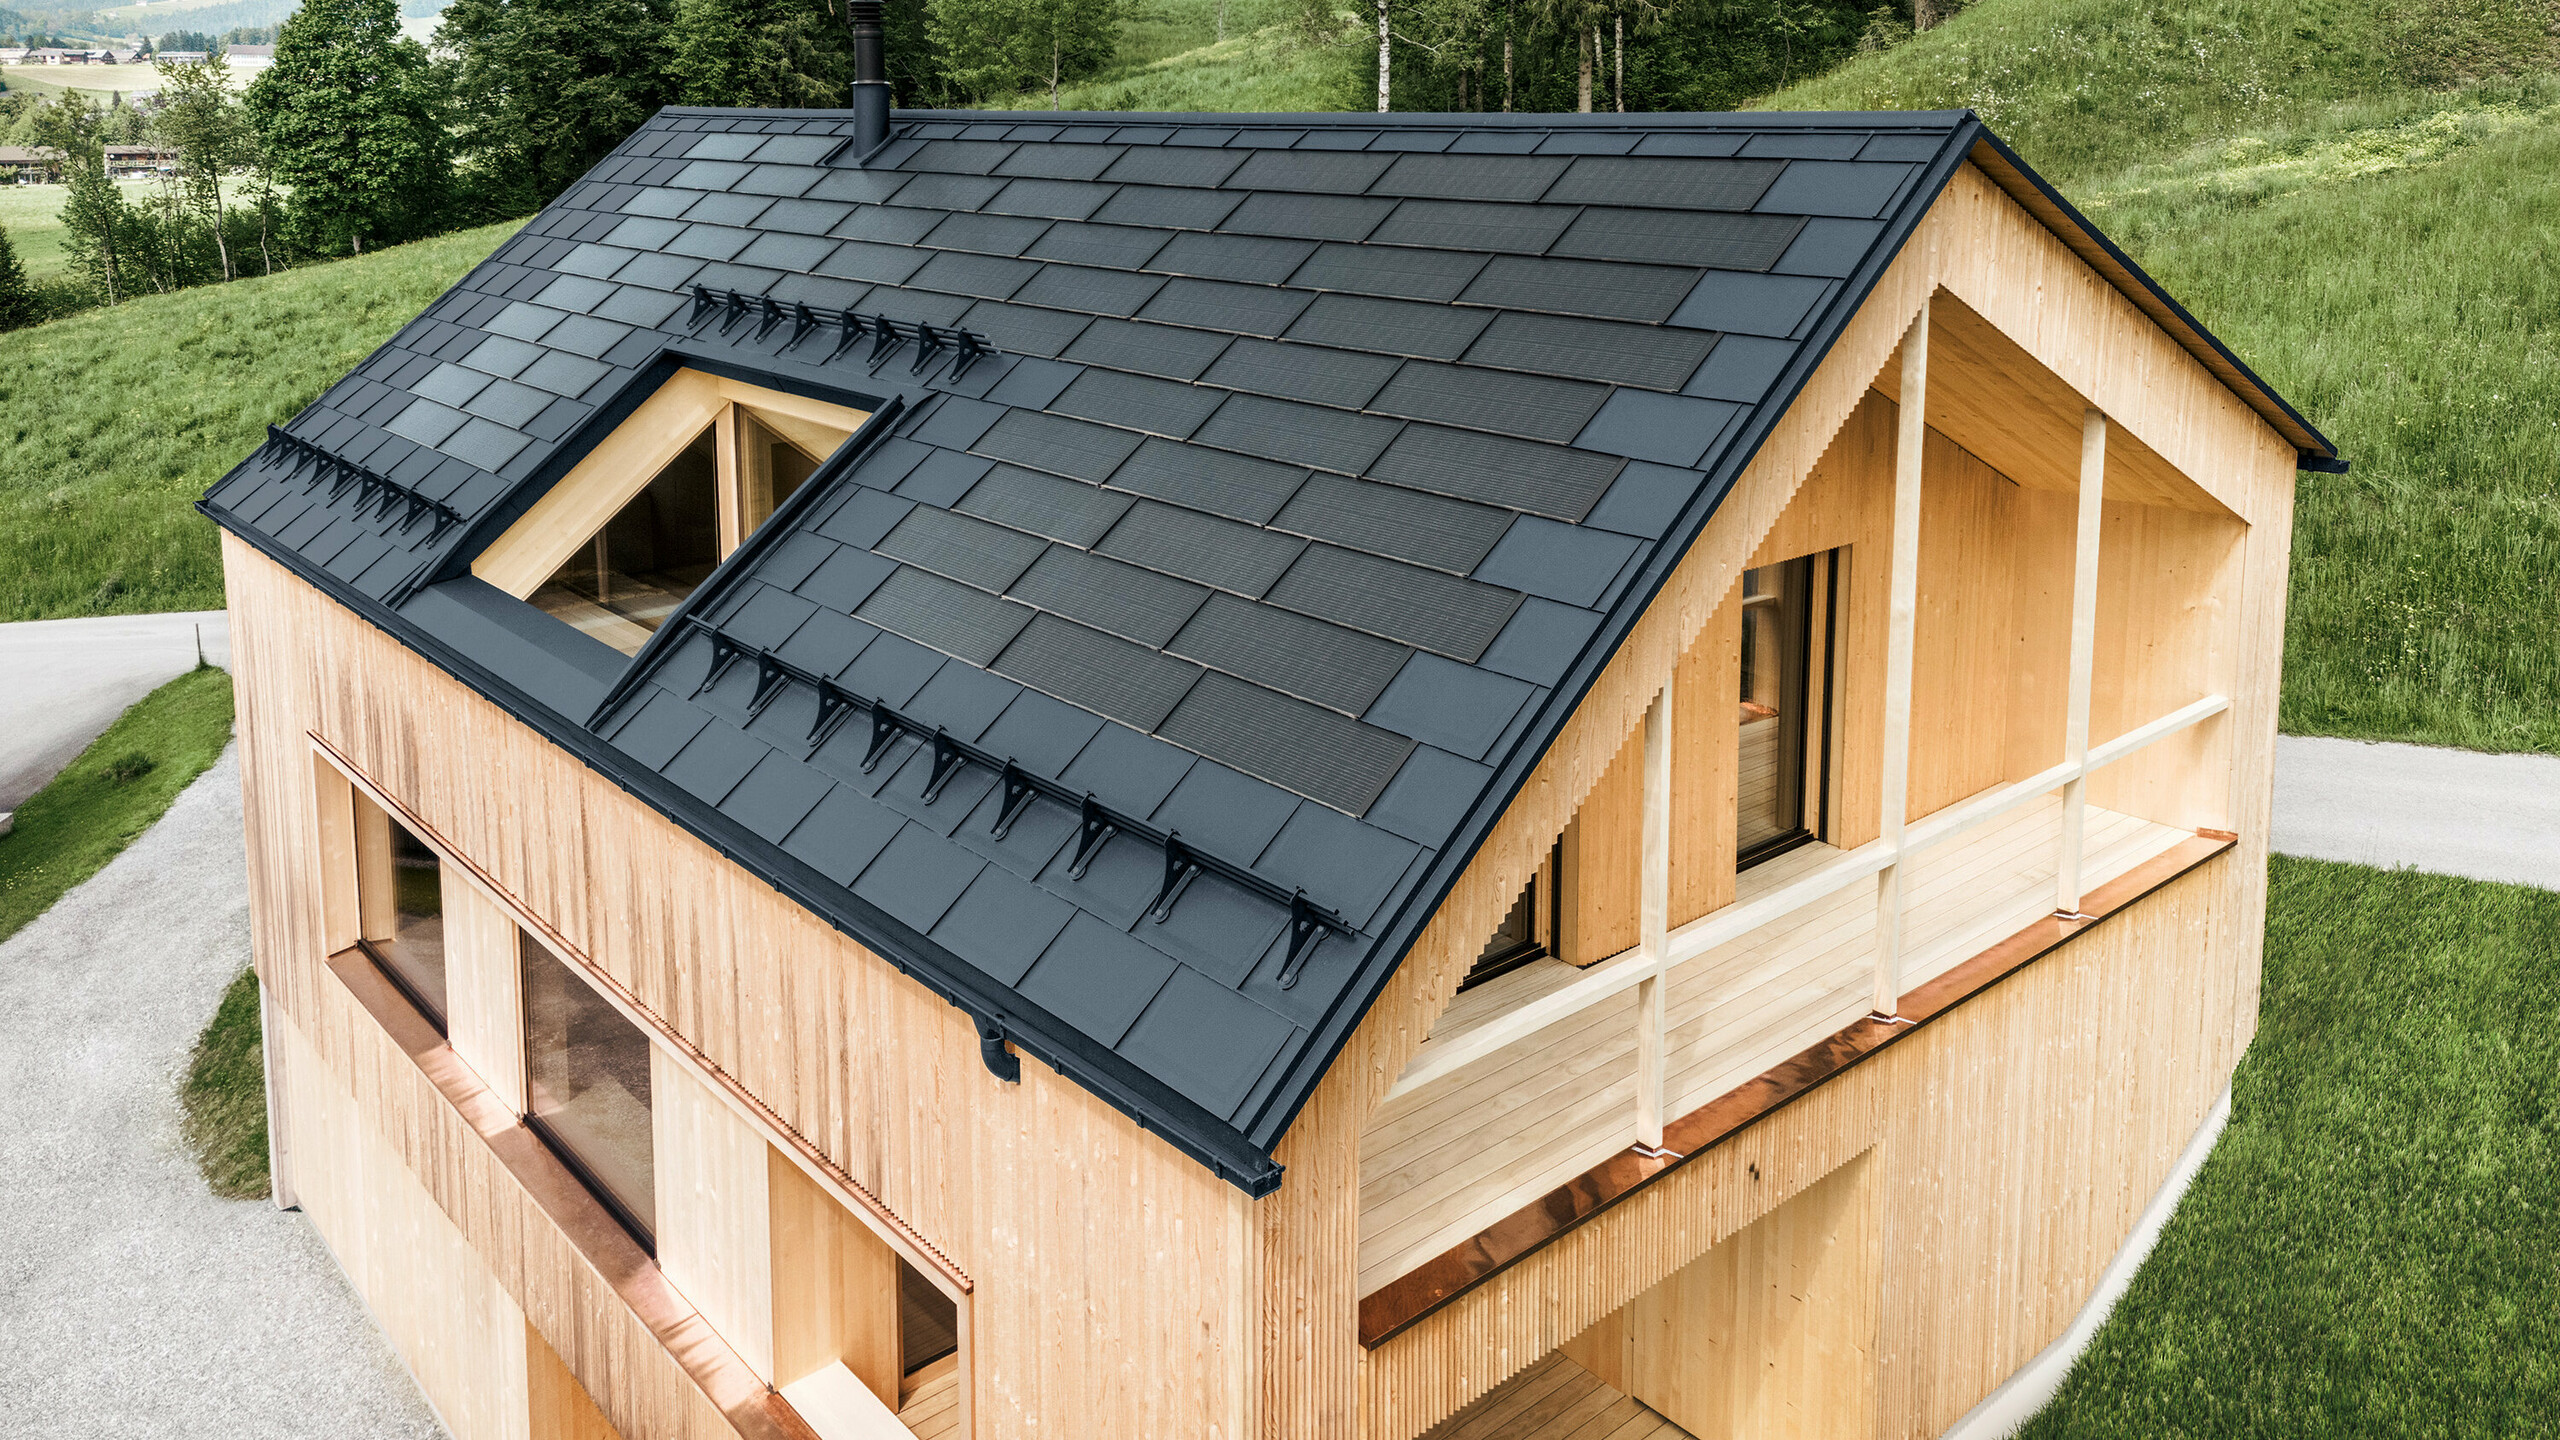 Maison individuelle dans la localité autrichienne d'Egg avec le panneau solaire de toiture PREFA et le panneau de toiture R.16 en anthracite, combinés à une façade en bois